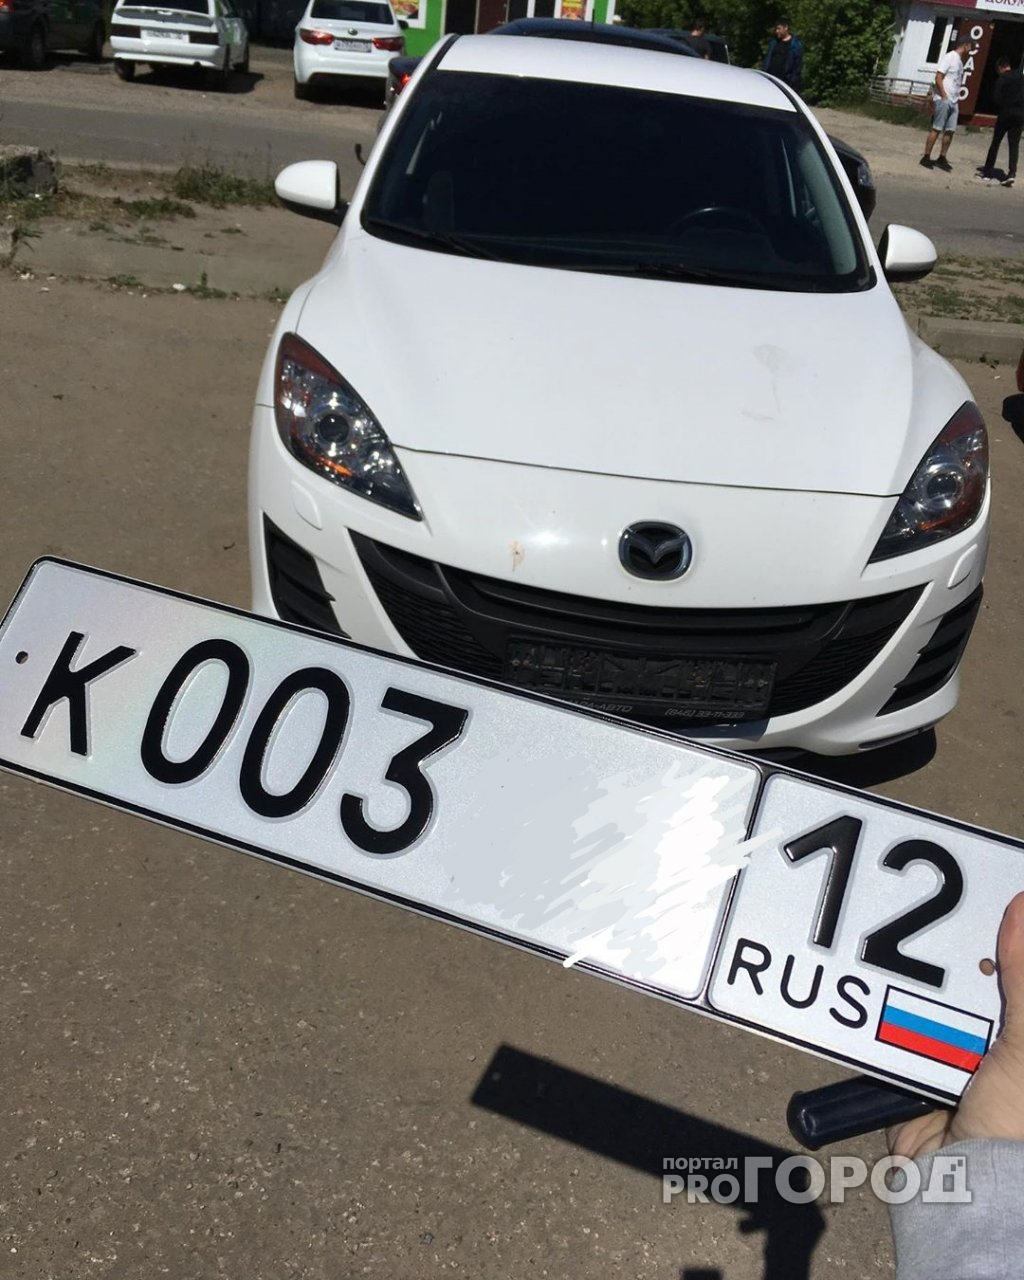 Новости России: для автомобильных номеров изменили правила